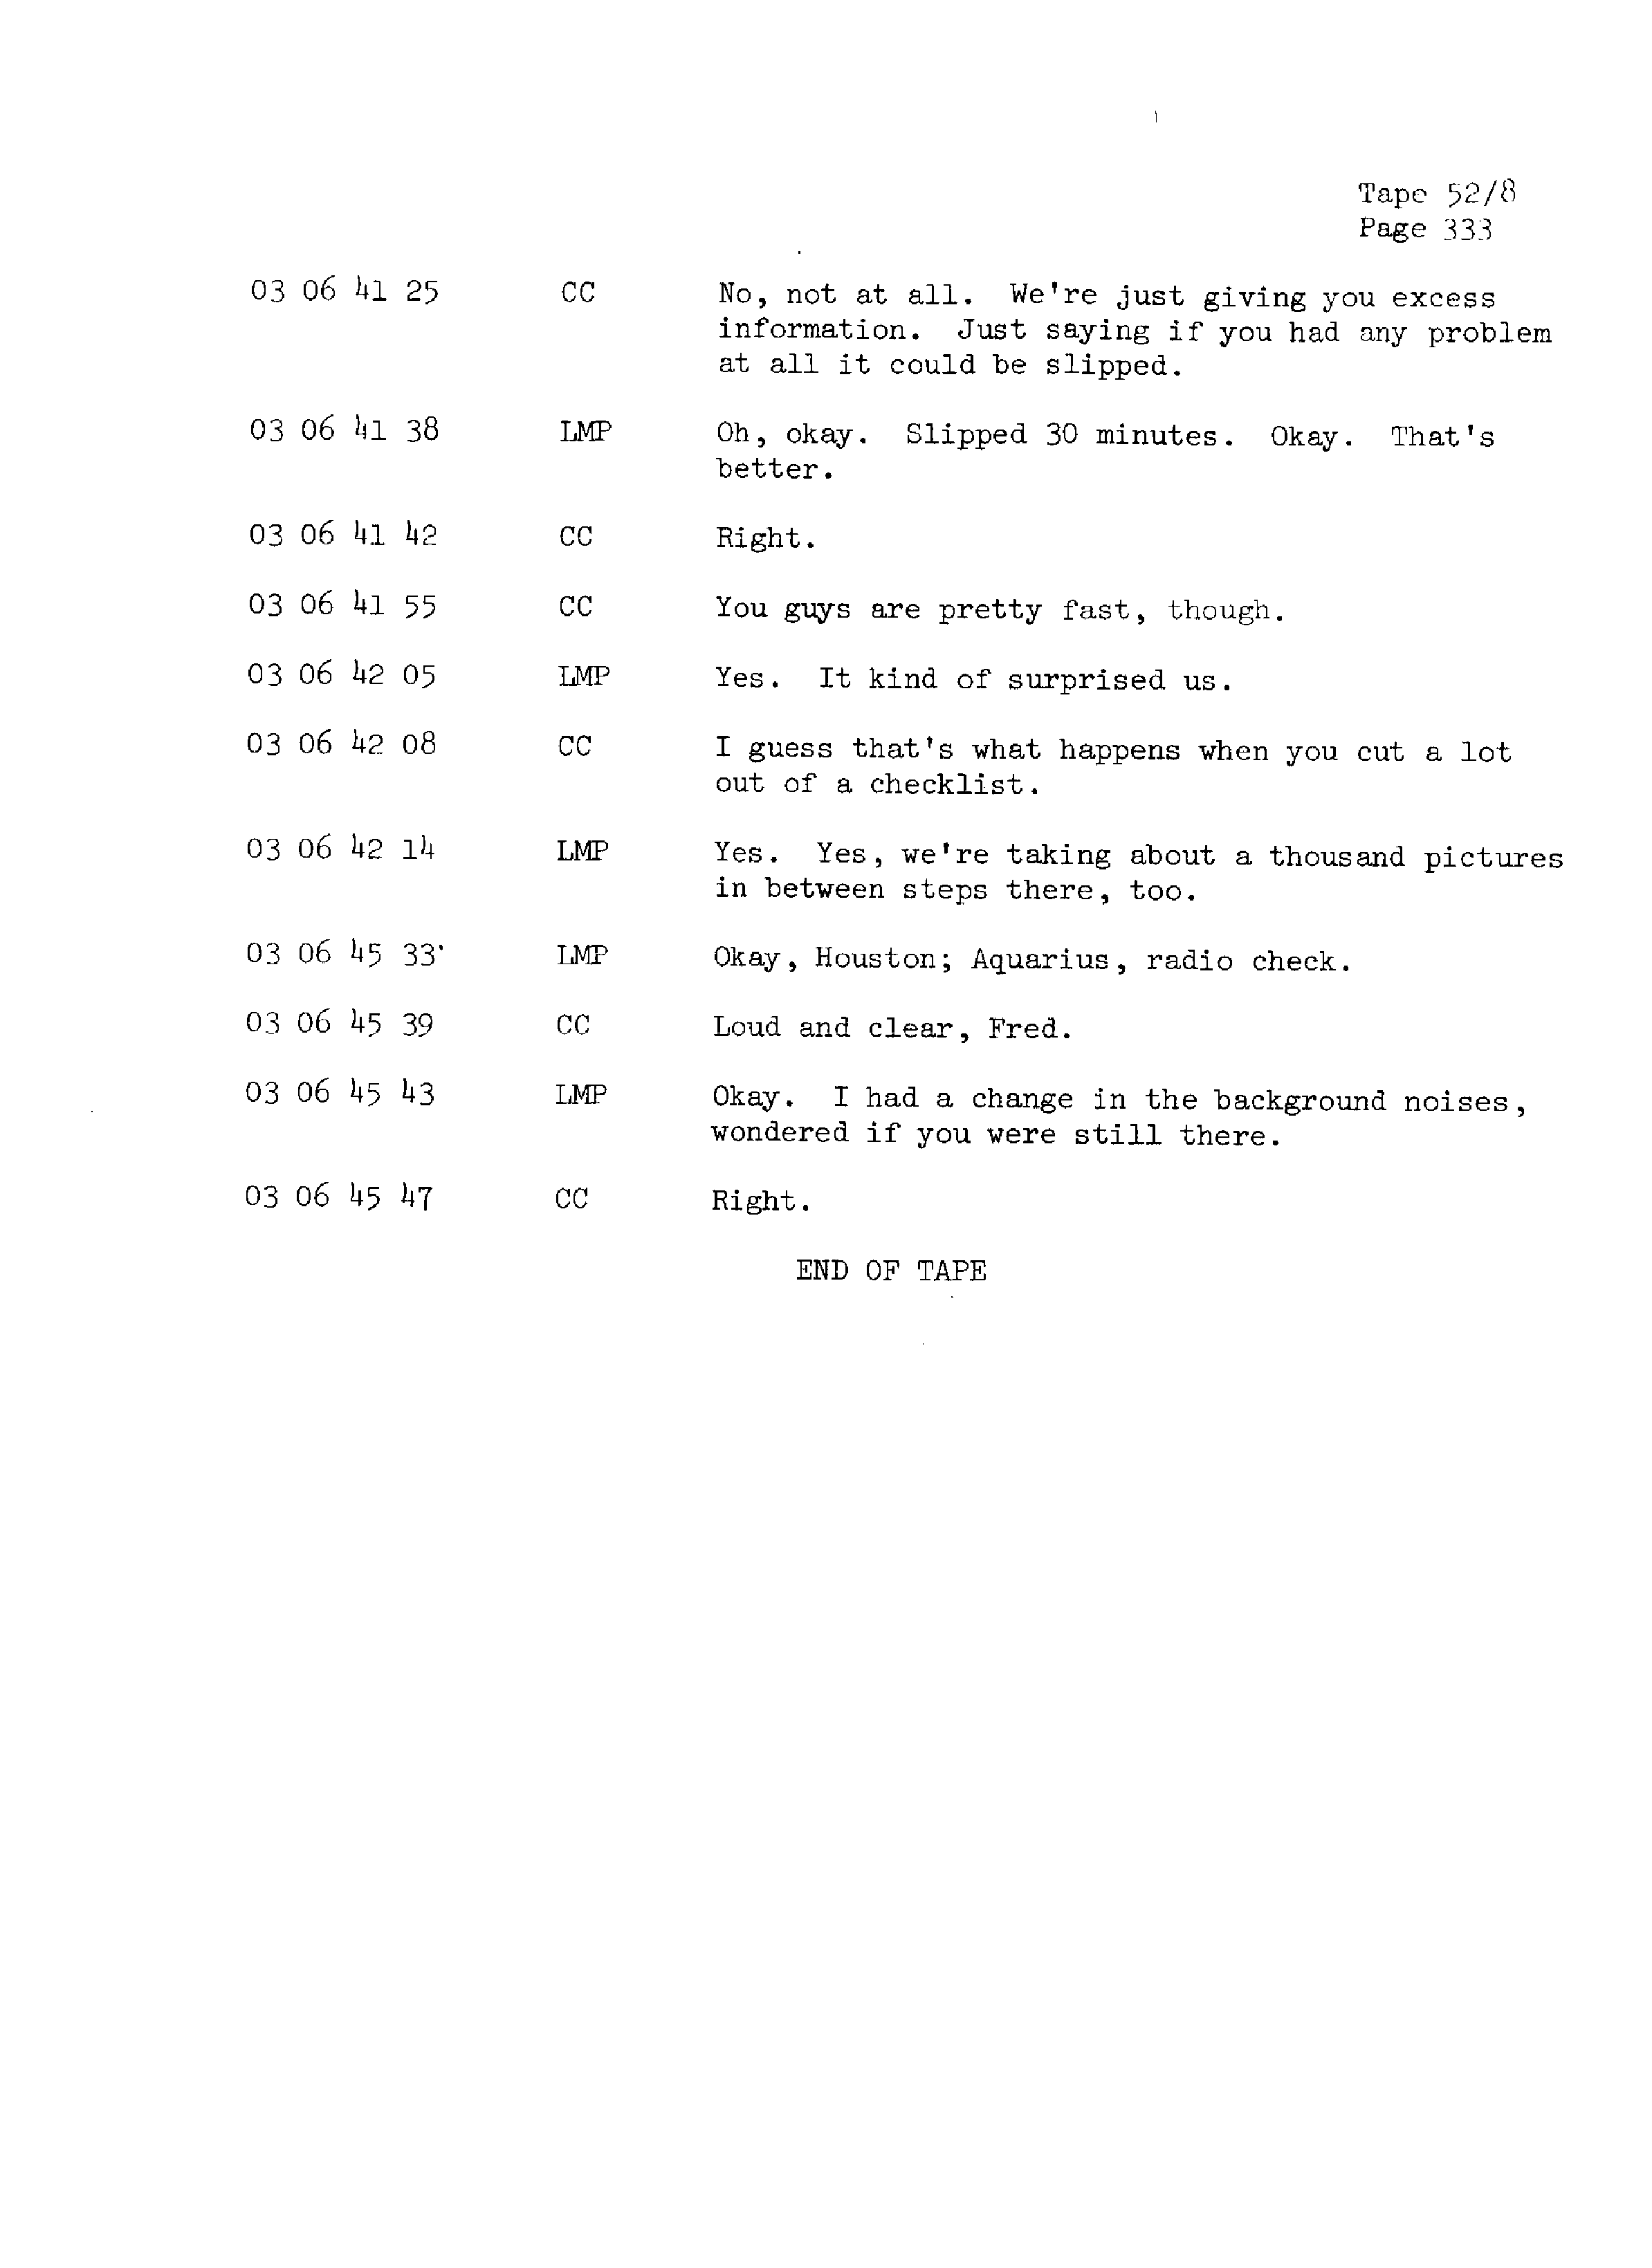 Page 340 of Apollo 13’s original transcript